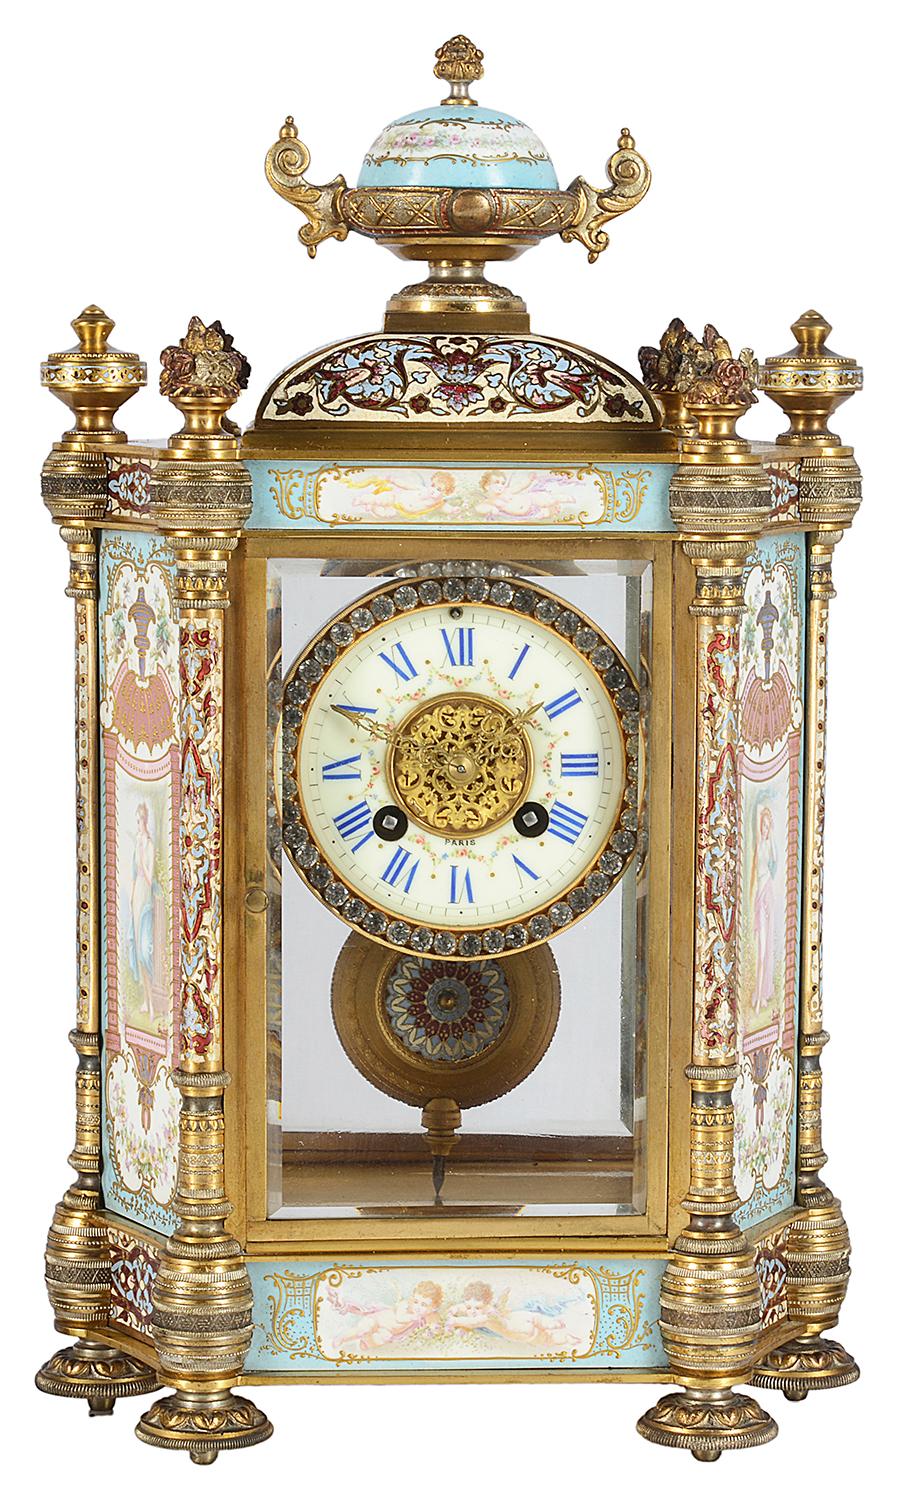 Très belle garniture d'horloge en émail champlevé et porcelaine de la fin du 19e siècle, dans un coffret en bronze doré, les panneaux en porcelaine de l'horloge et des urnes représentant des vierges classiques dans les jardins, signé 'Collet',